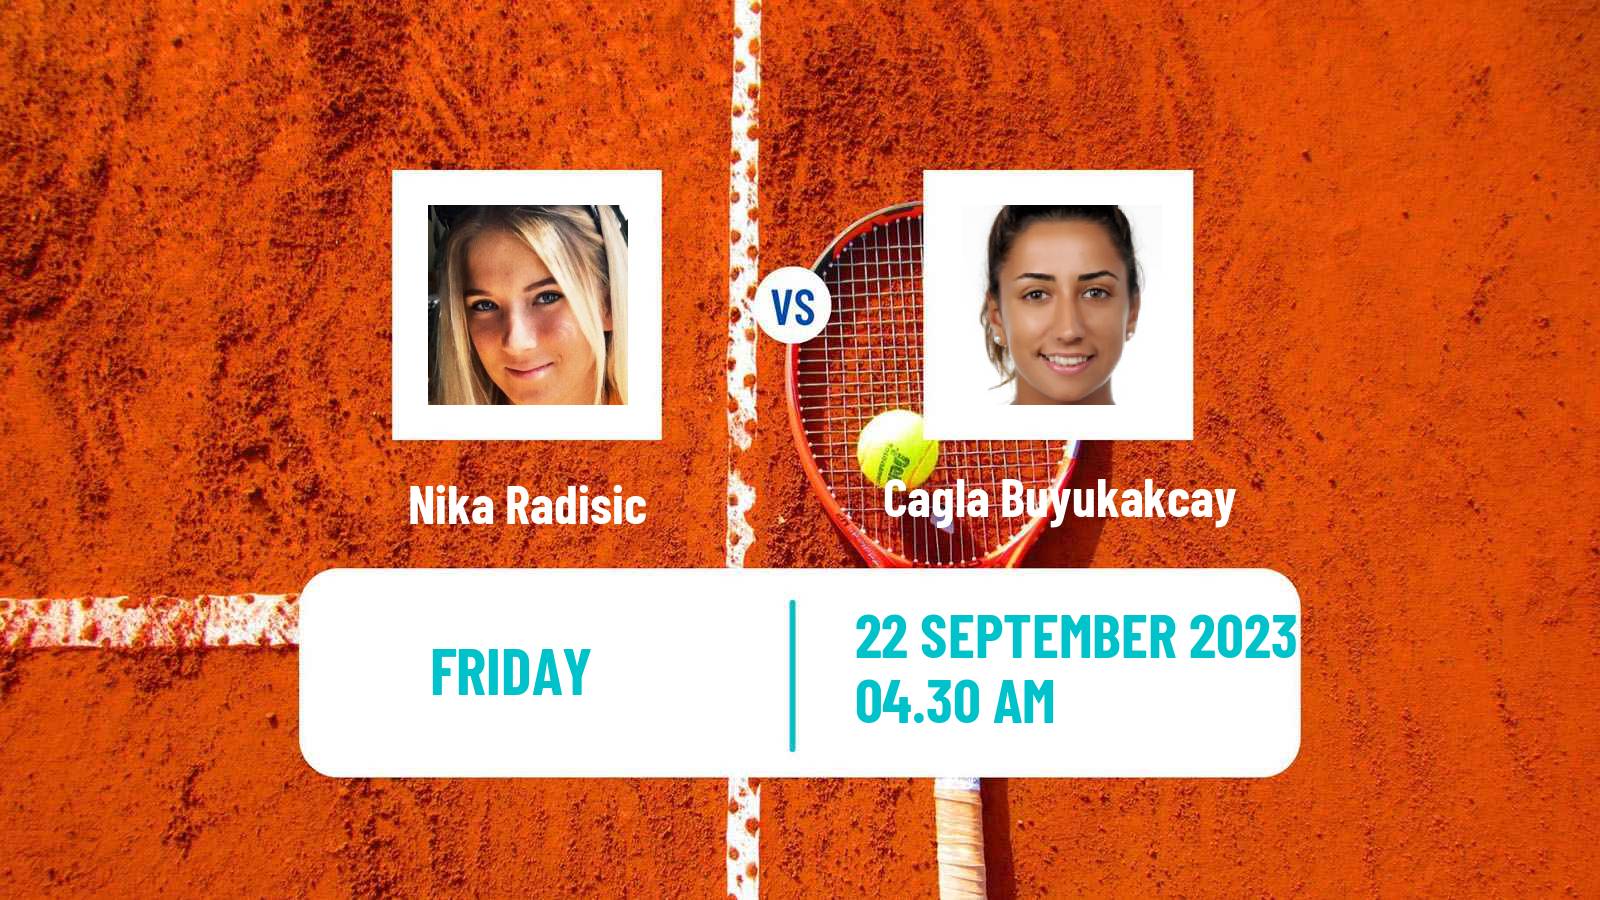 Tennis ITF W40 Pazardzhik Women Nika Radisic - Cagla Buyukakcay